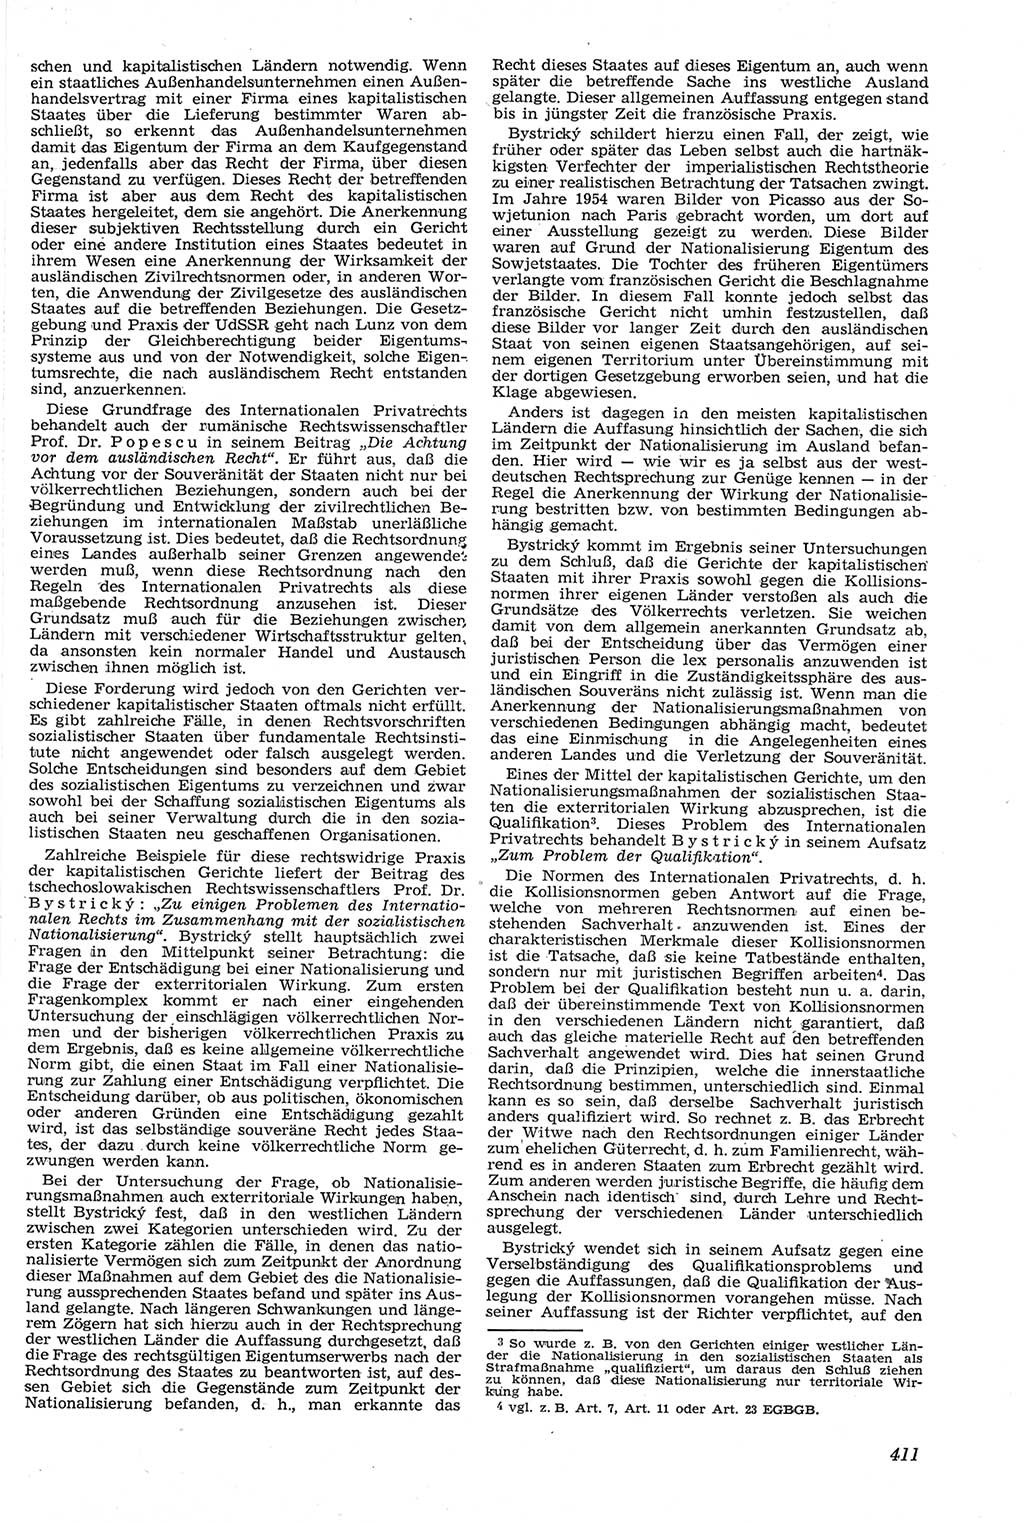 Neue Justiz (NJ), Zeitschrift für Recht und Rechtswissenschaft [Deutsche Demokratische Republik (DDR)], 14. Jahrgang 1960, Seite 411 (NJ DDR 1960, S. 411)